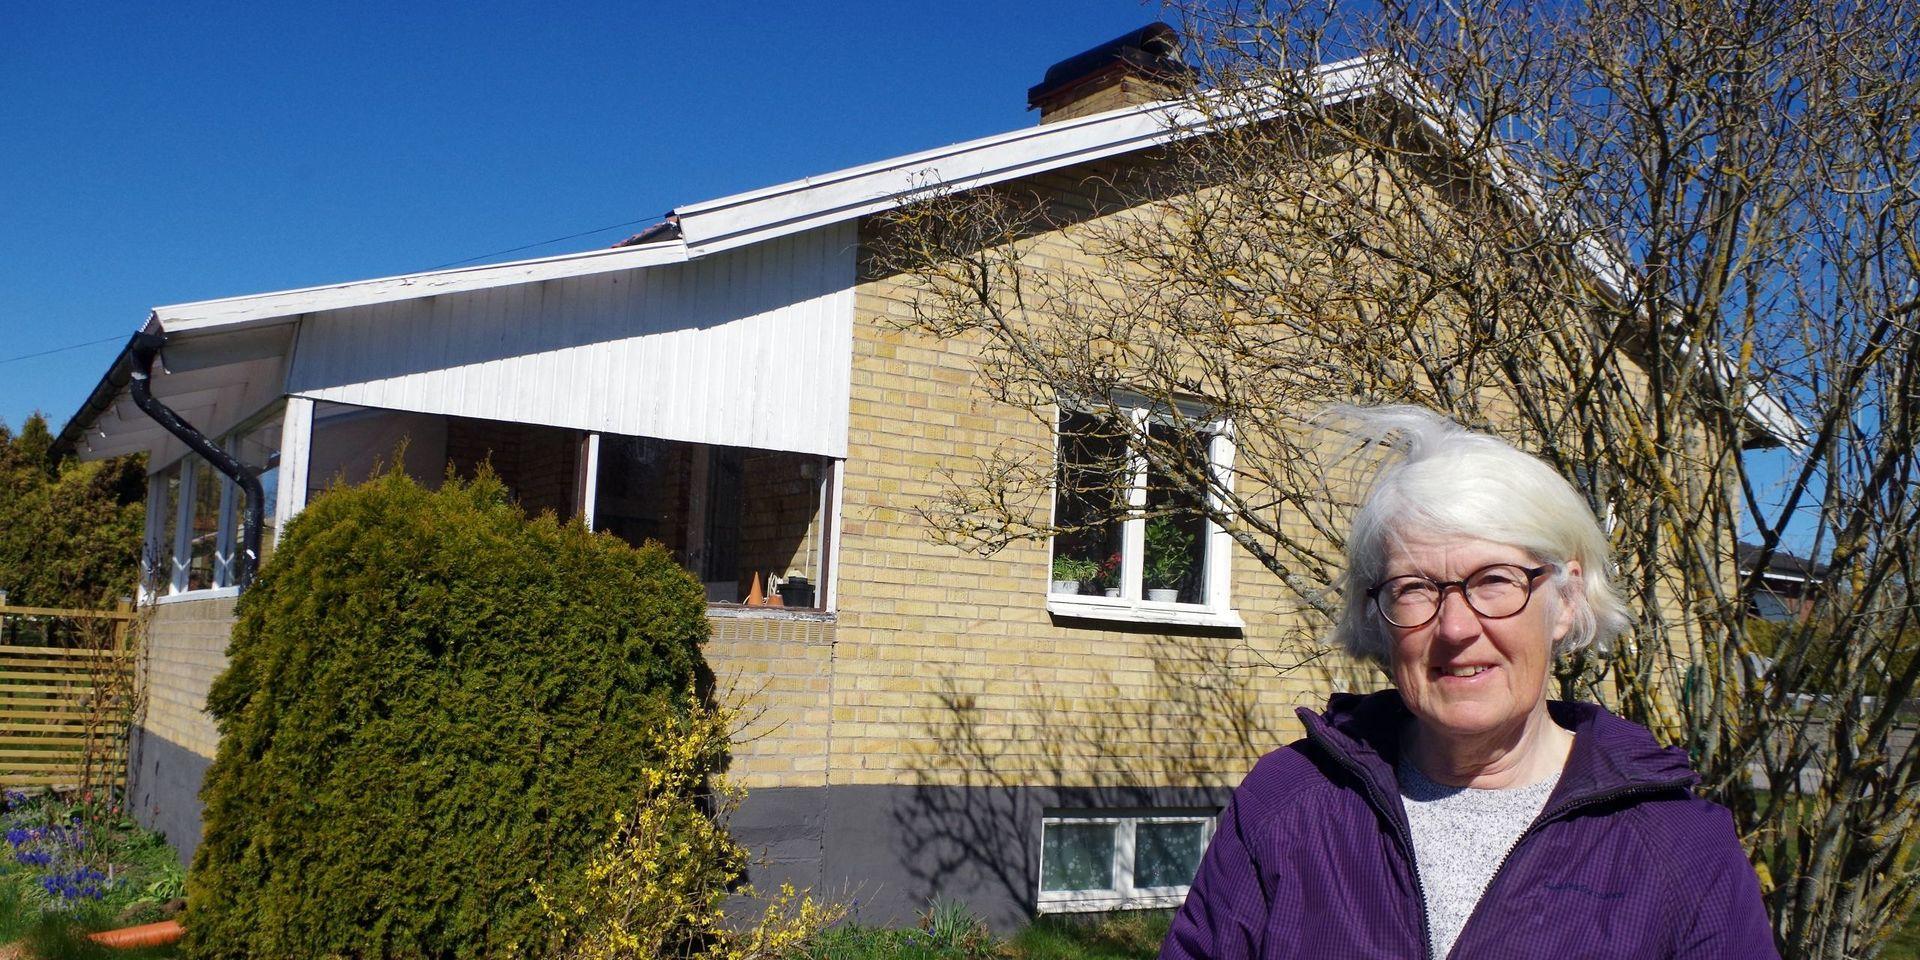 Ann-Sofie Jeppson har lämnat sitt älskade Göteborg och flyttat till Skaraborg, närmare bestämt till Stenstorp där renoveringen av villan mitt i samhället pågår för fullt. I höst kommer hennes barnbok om Göteborgs historia ut, lagom till stadens 400-årsjubileum nästa år.